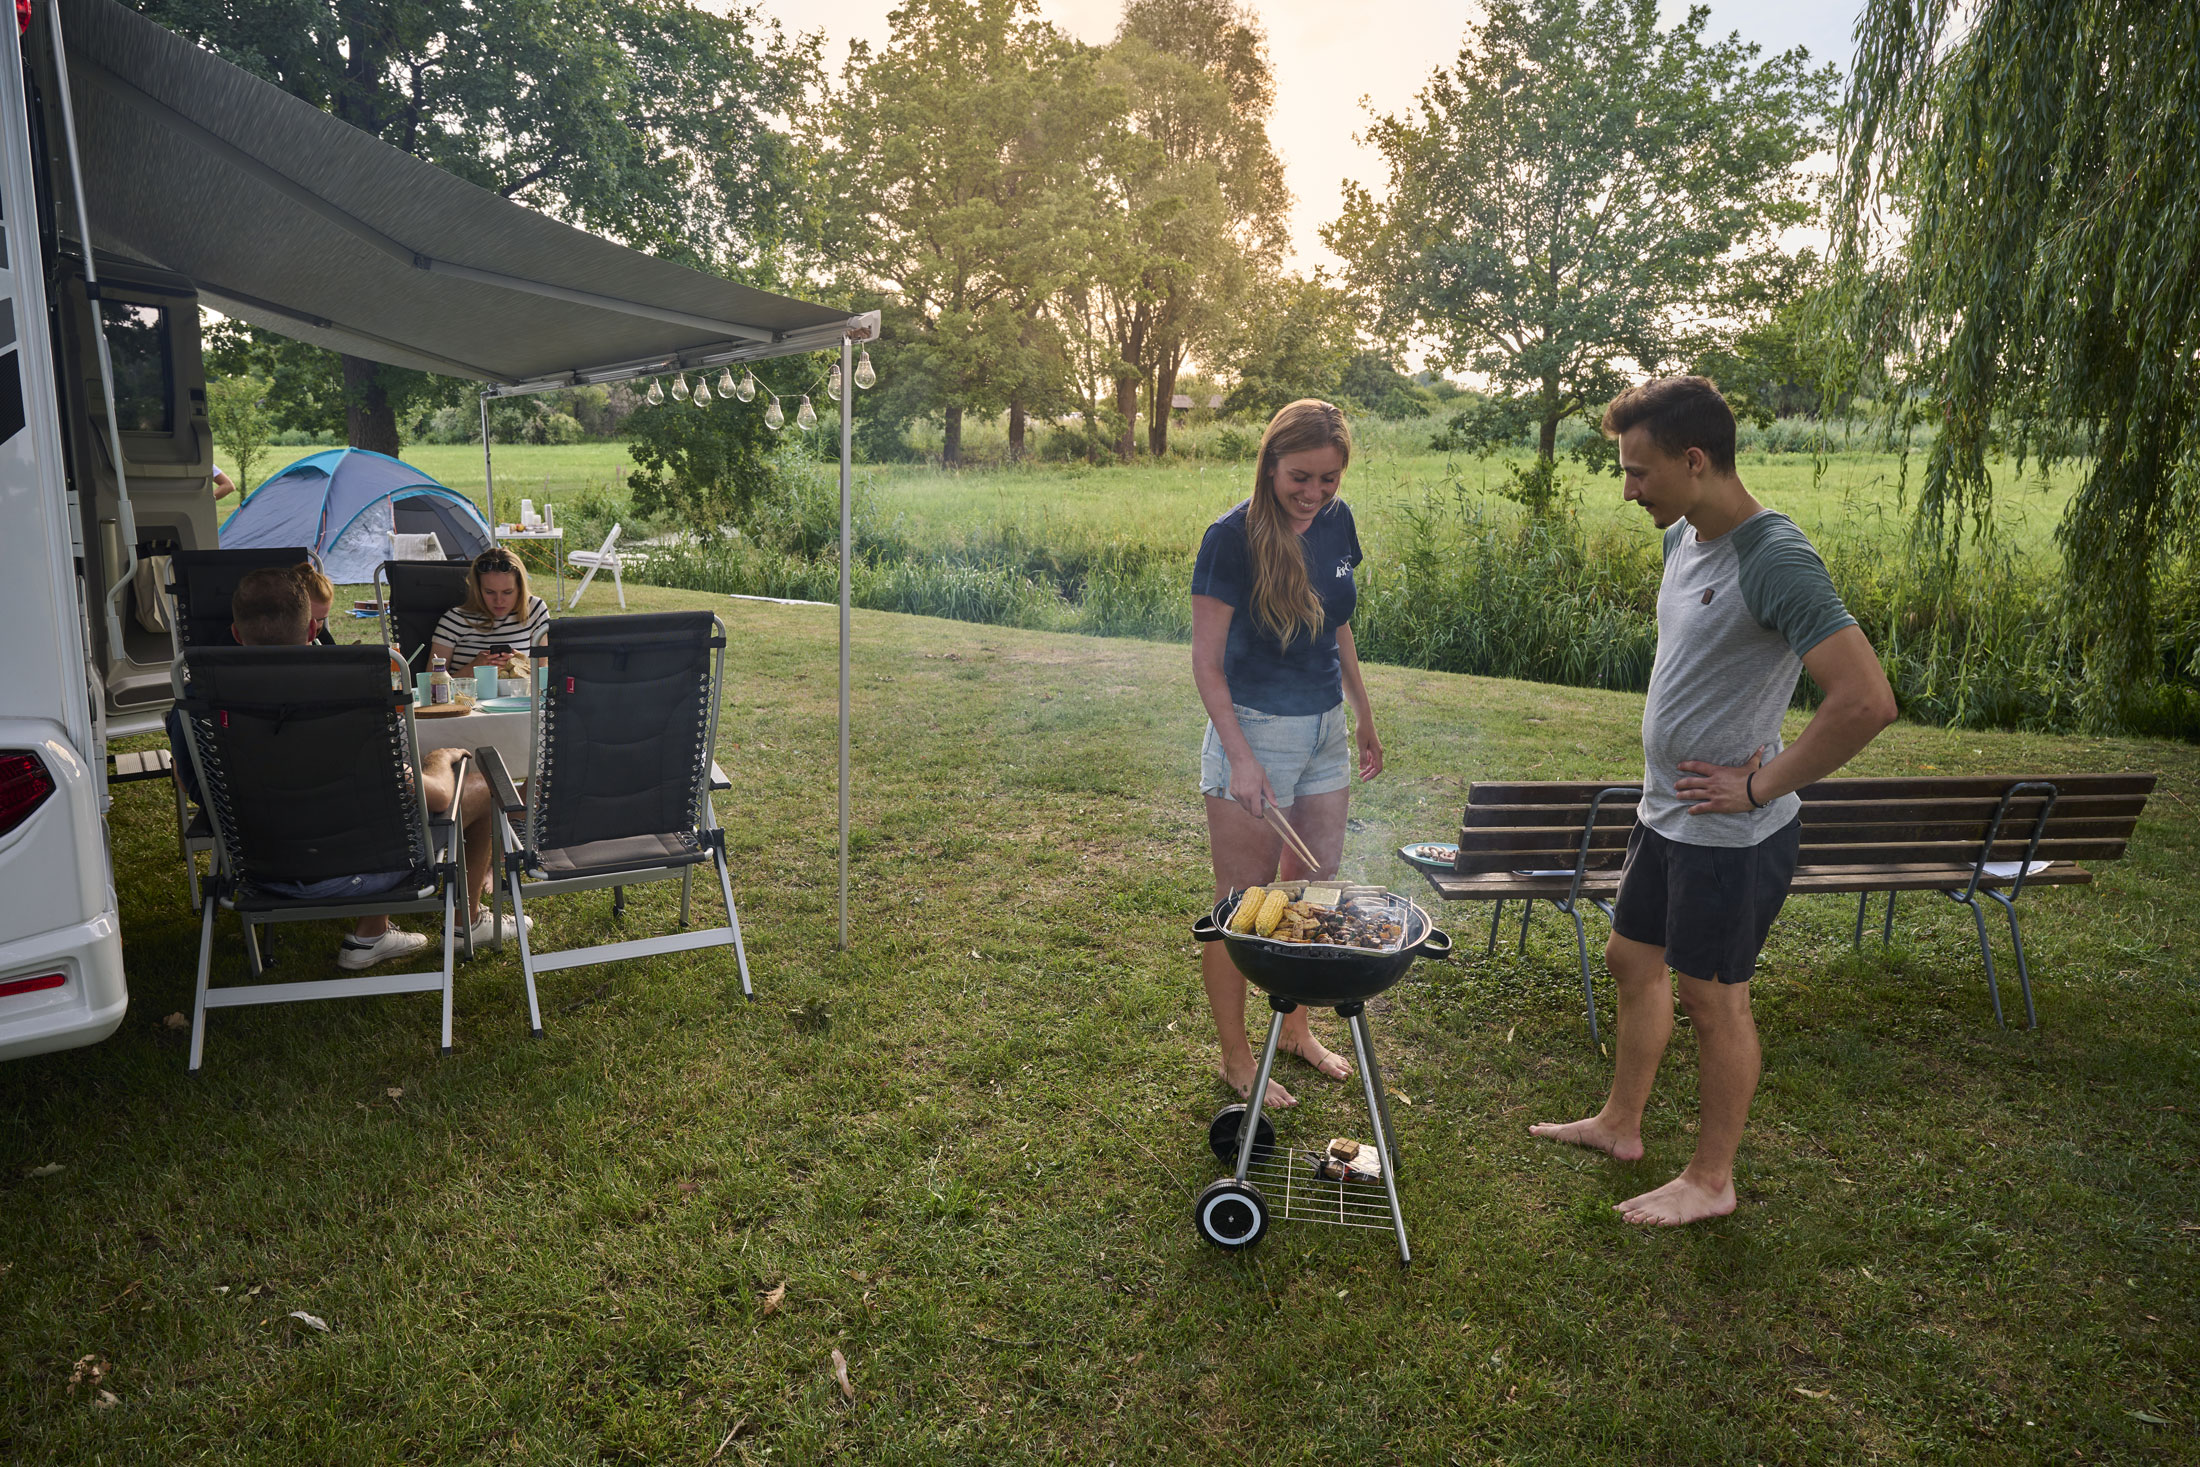 Es braucht nicht Viel, um glückliche Urlaubstage zu verbringen: Beim Camping könnt ihr prima abschalten und die einfachen Dinge genießen